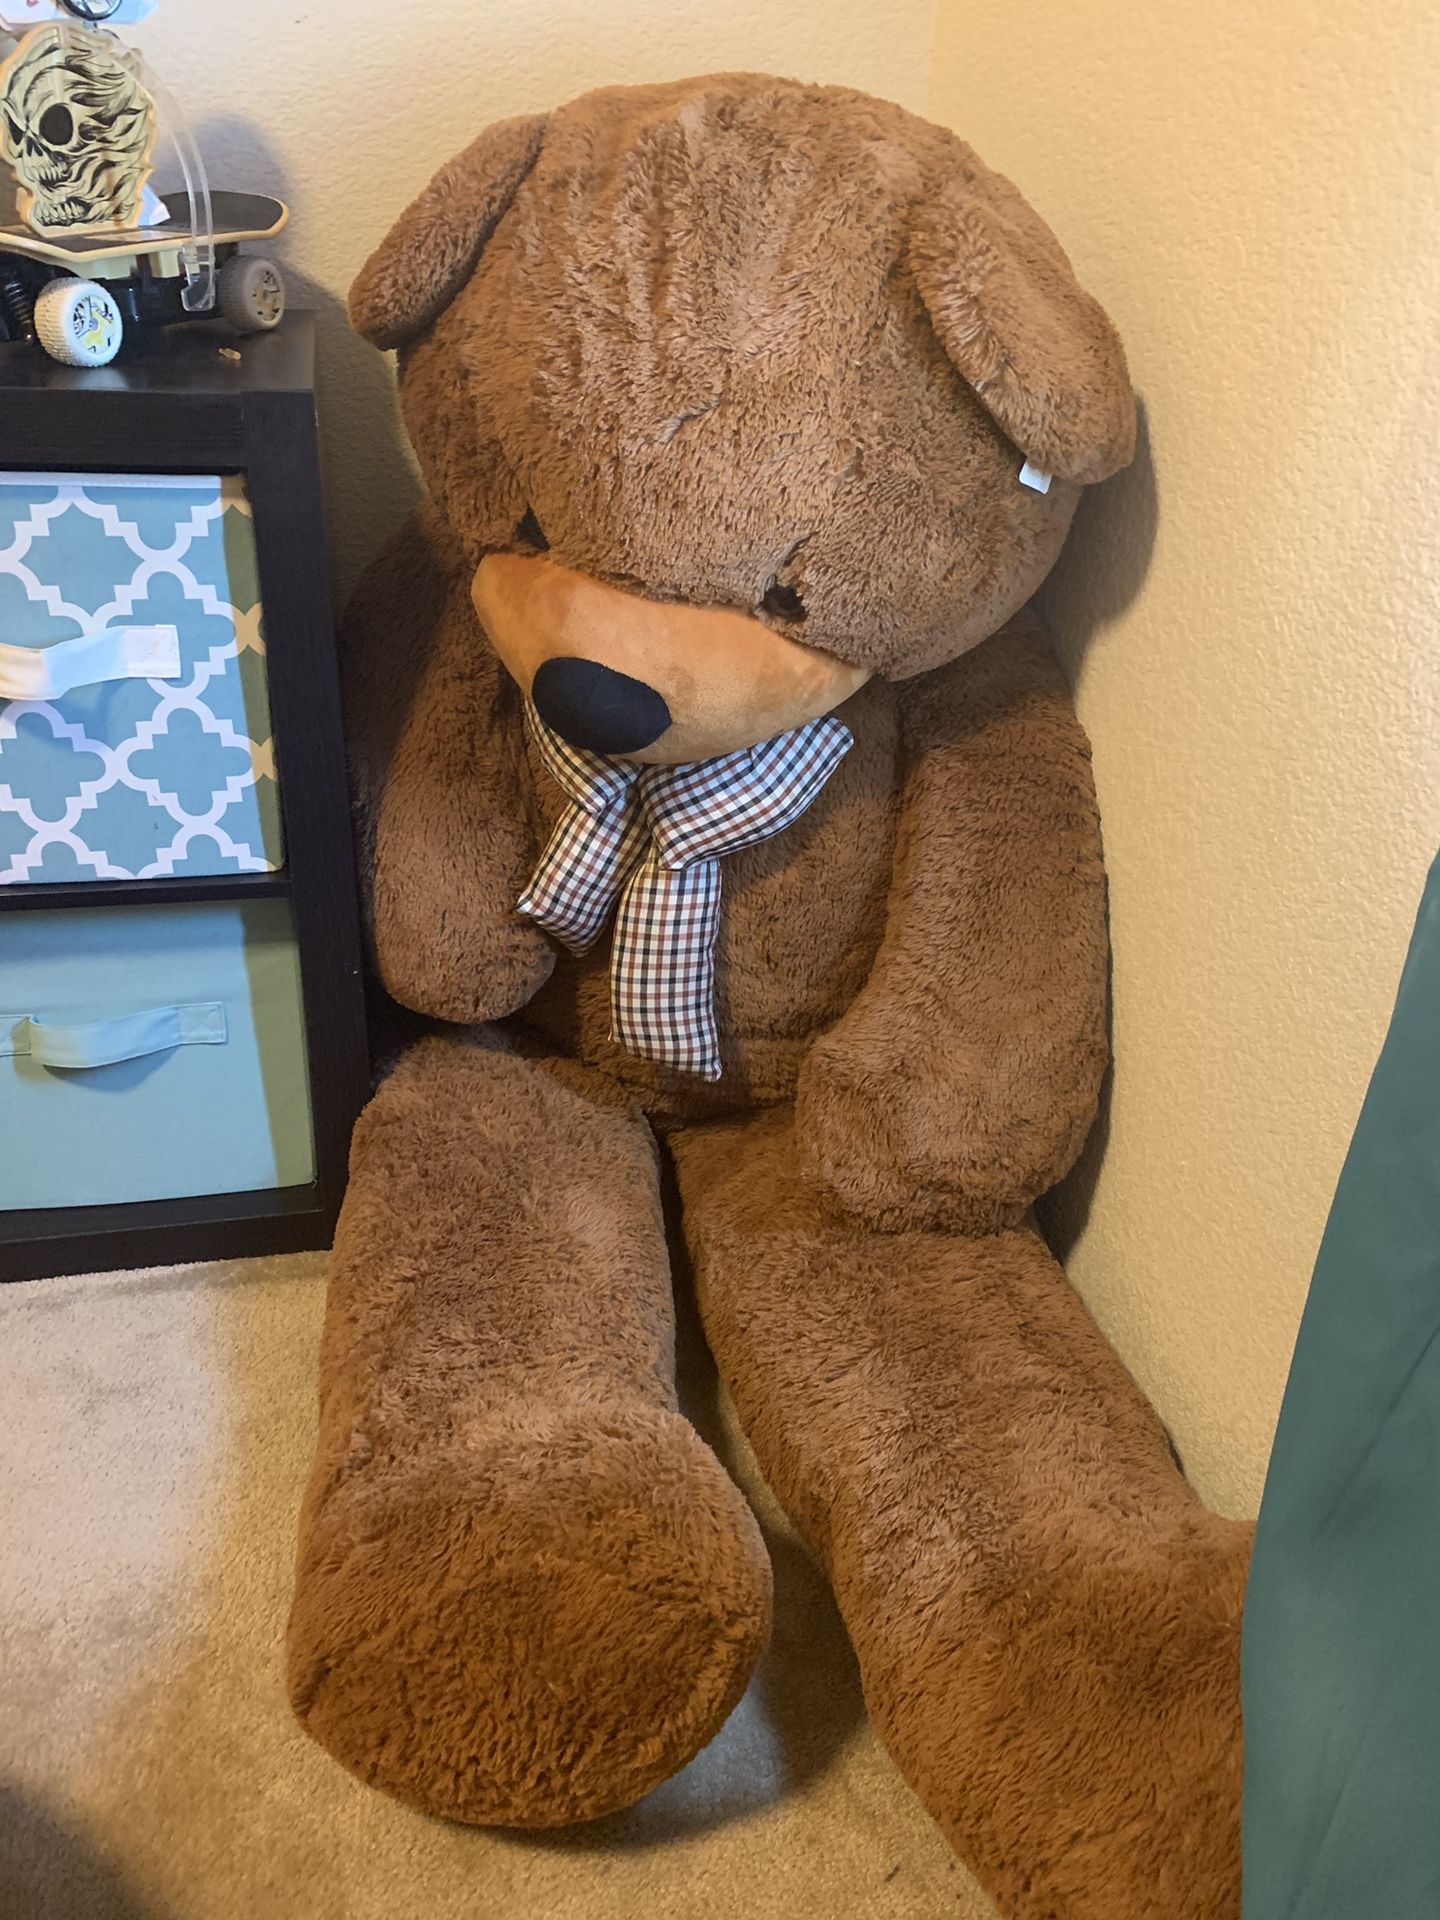 Huuuuuuuge stuffed Teddy Bear